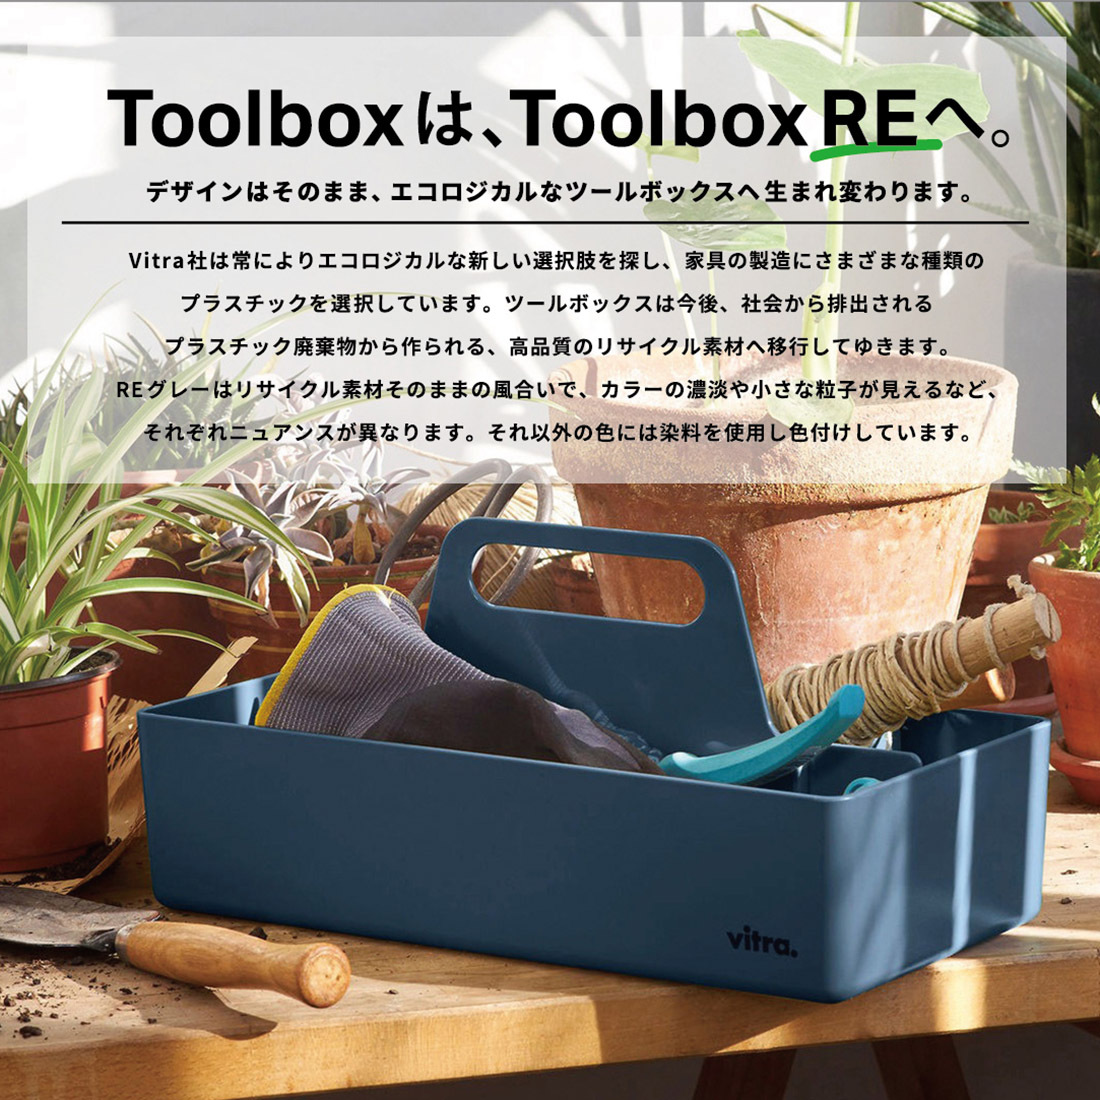 Vitra ヴィトラ Toolbox ツールボックス ツールボックスRE Arik Levy 工具箱 収納 リサイクル コスメボックス